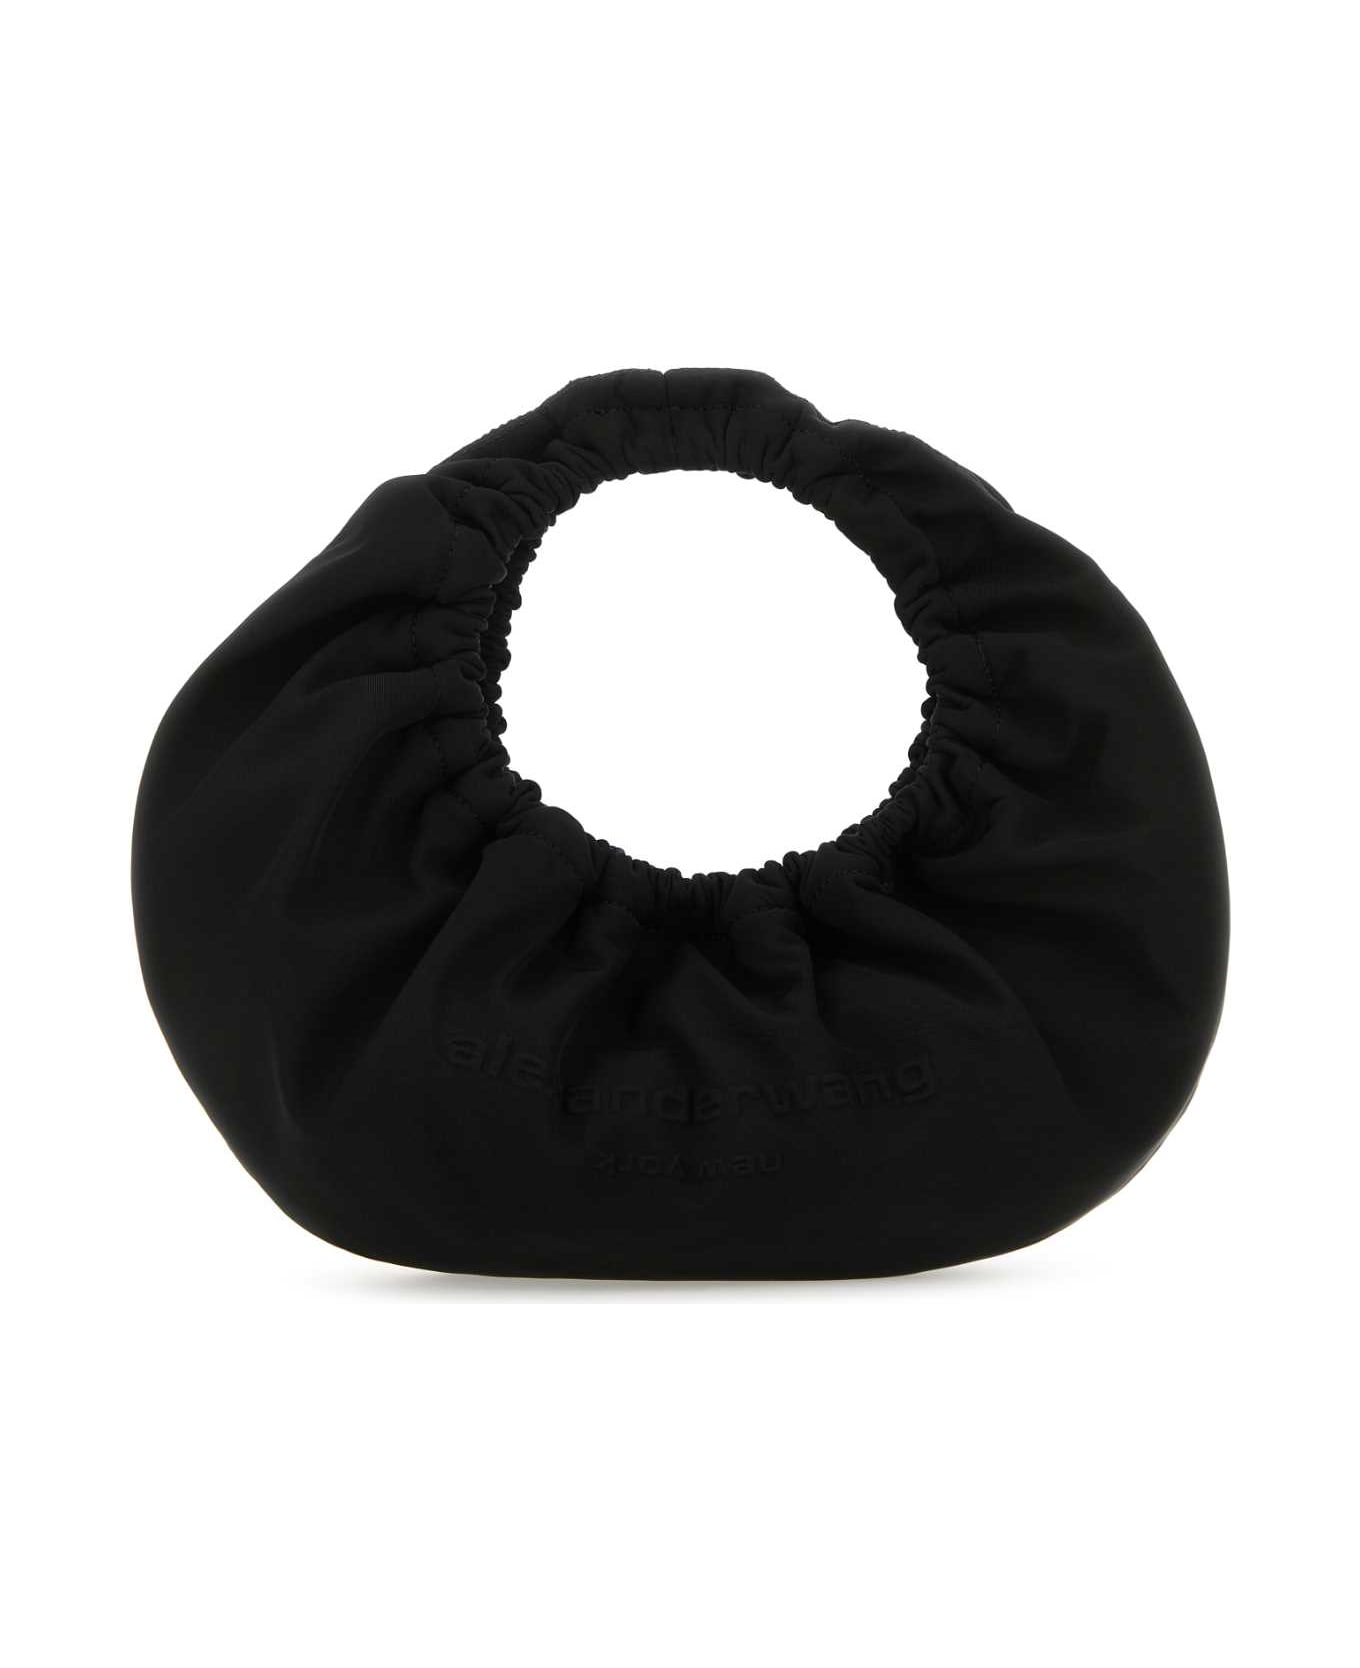 Alexander Wang Black Fabric Crescent Small Handbag - Black